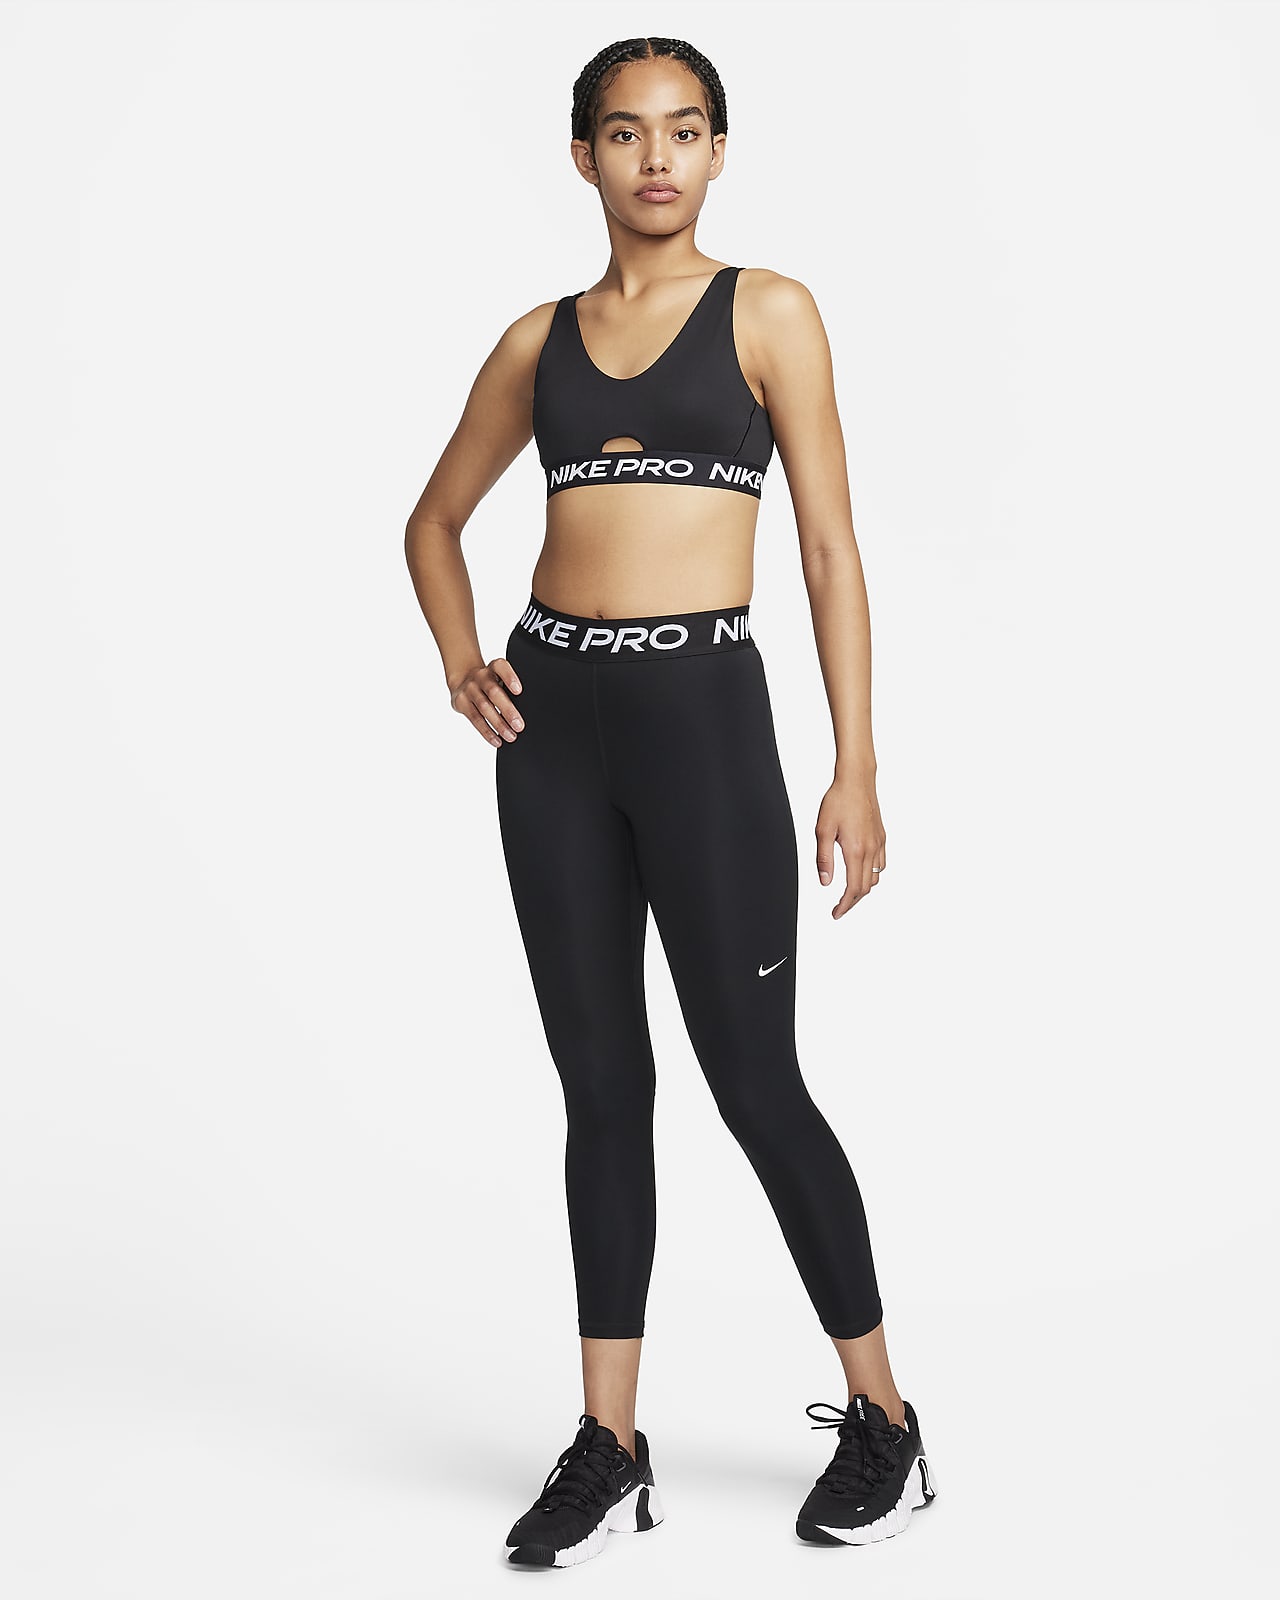 New Women's Training & Gym Sports Bras. Nike LU